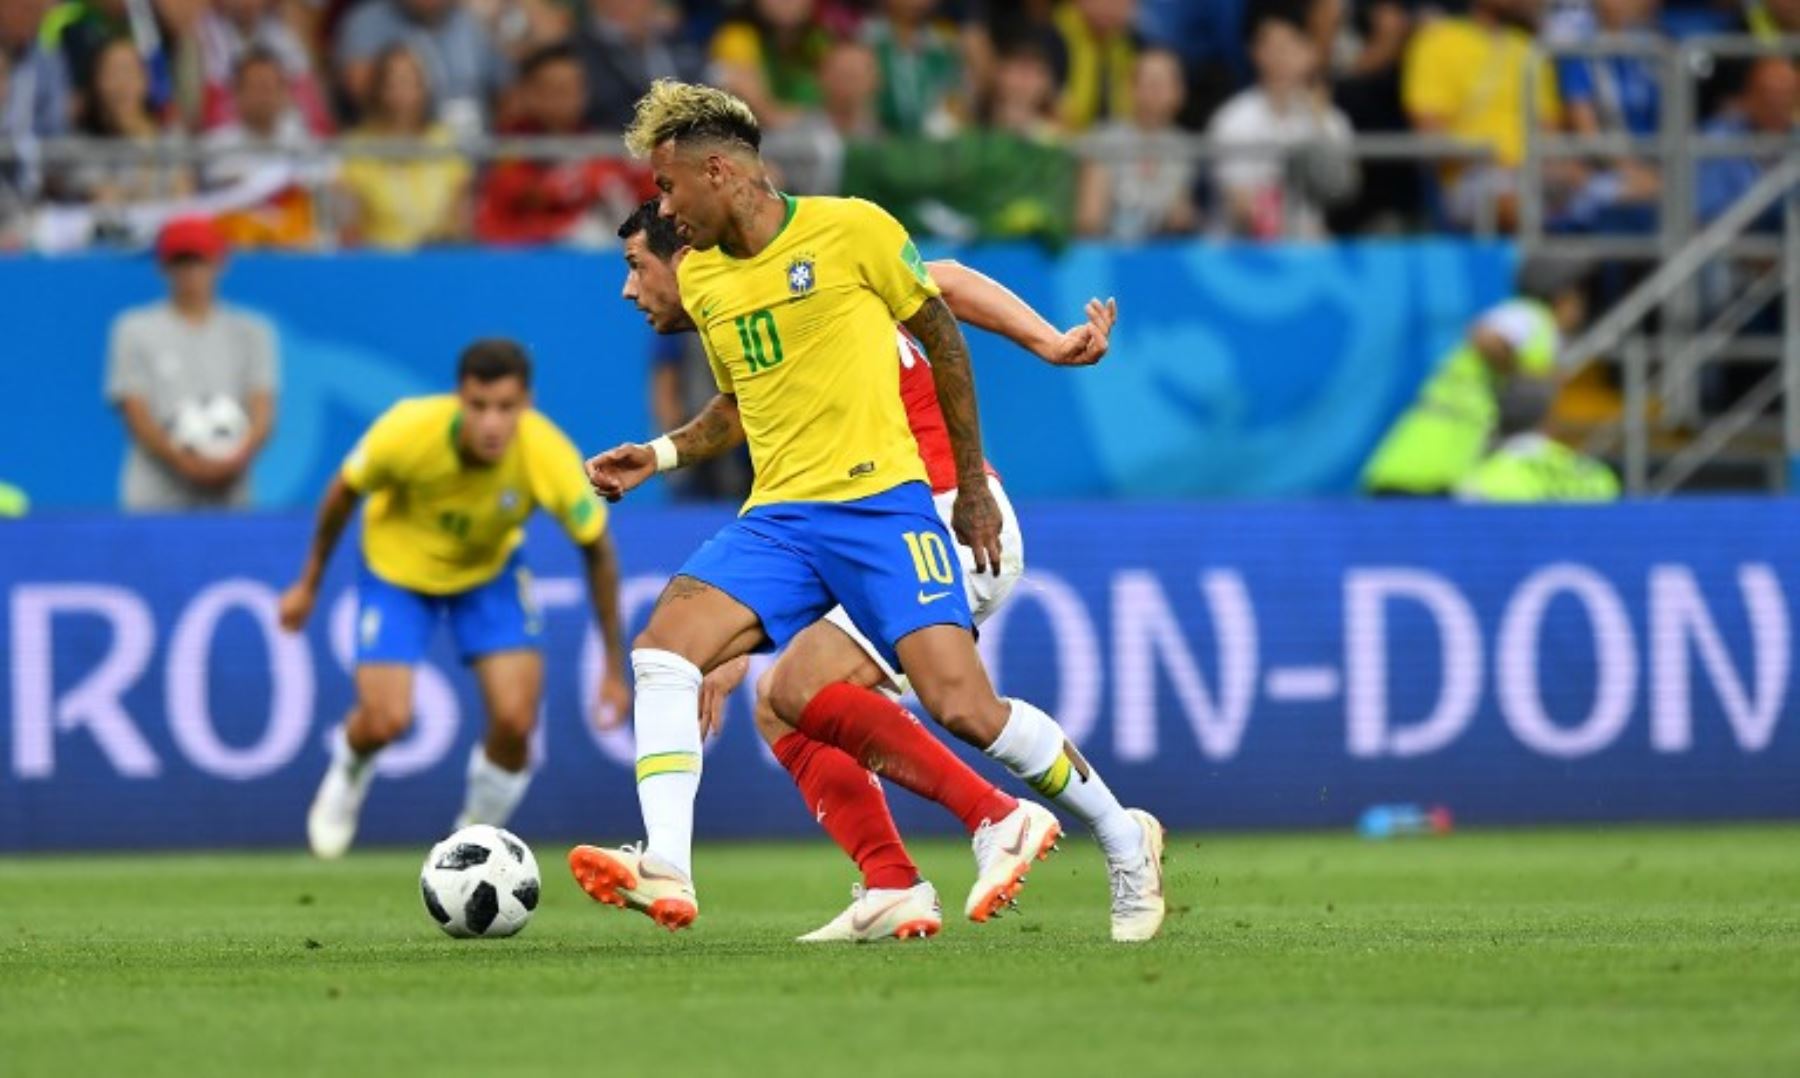 El delantero brasileño Neymar (delantero) compite por el balón durante el partido de fútbol del Grupo E de la Copa del Mundo Rusia 2018 entre Brasil y Suiza en el Rostov Arena en Rostov-On-Don.Foto:AFP